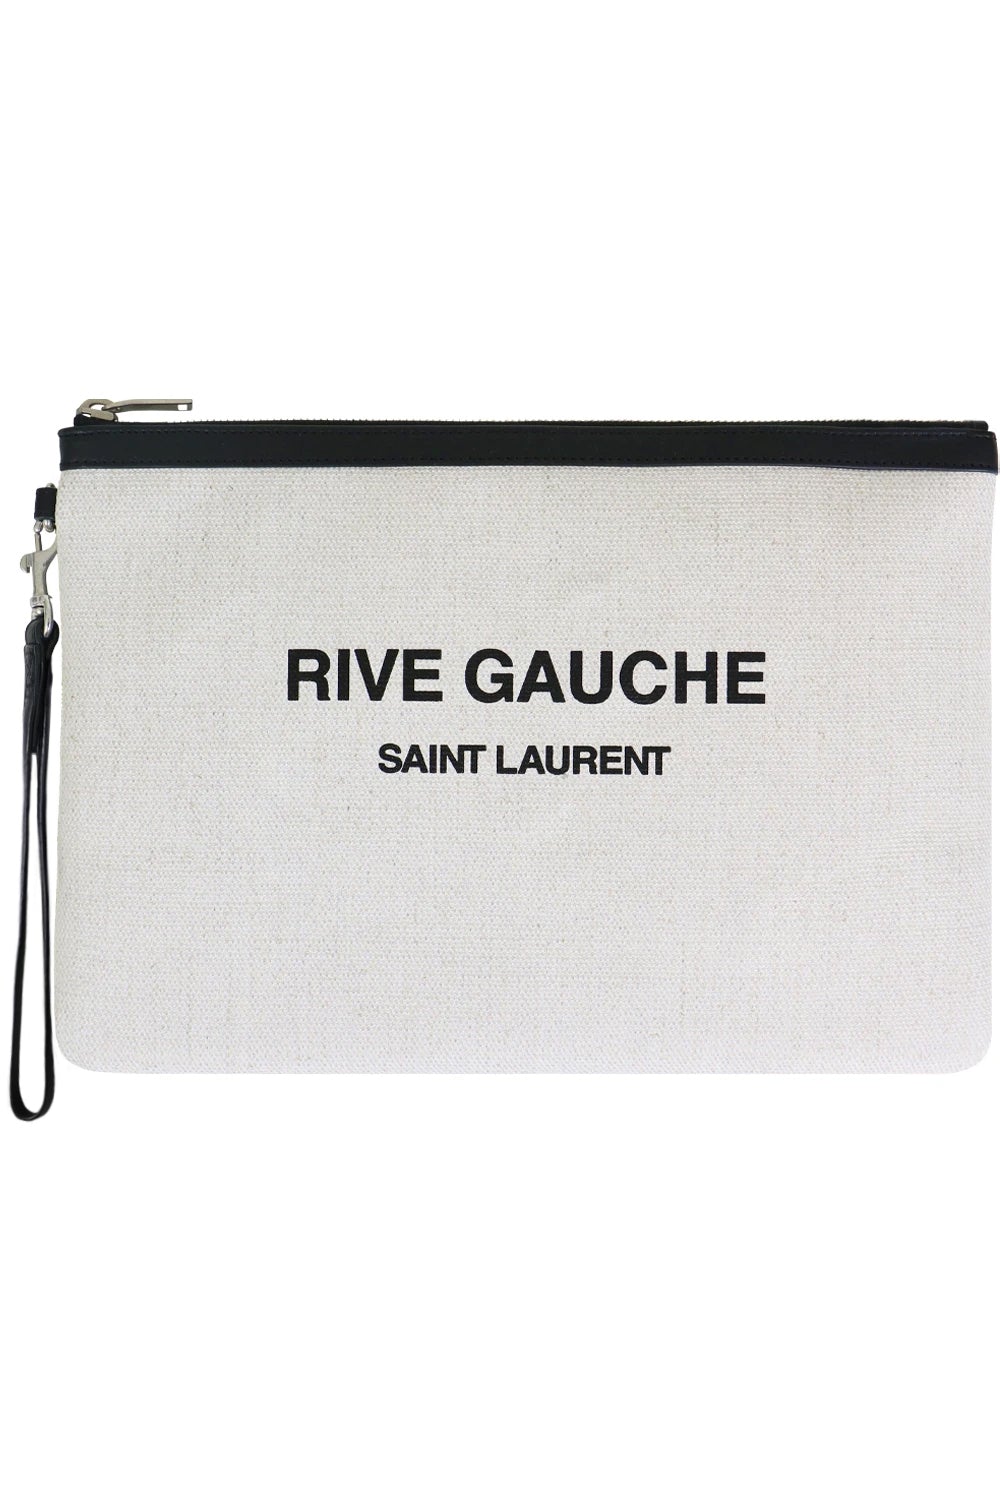 Shop Saint Laurent CABAS RIVE GAUCHE RIVE GAUCHE BUCKET BAG IN LINEN (____)  by candylovecath01